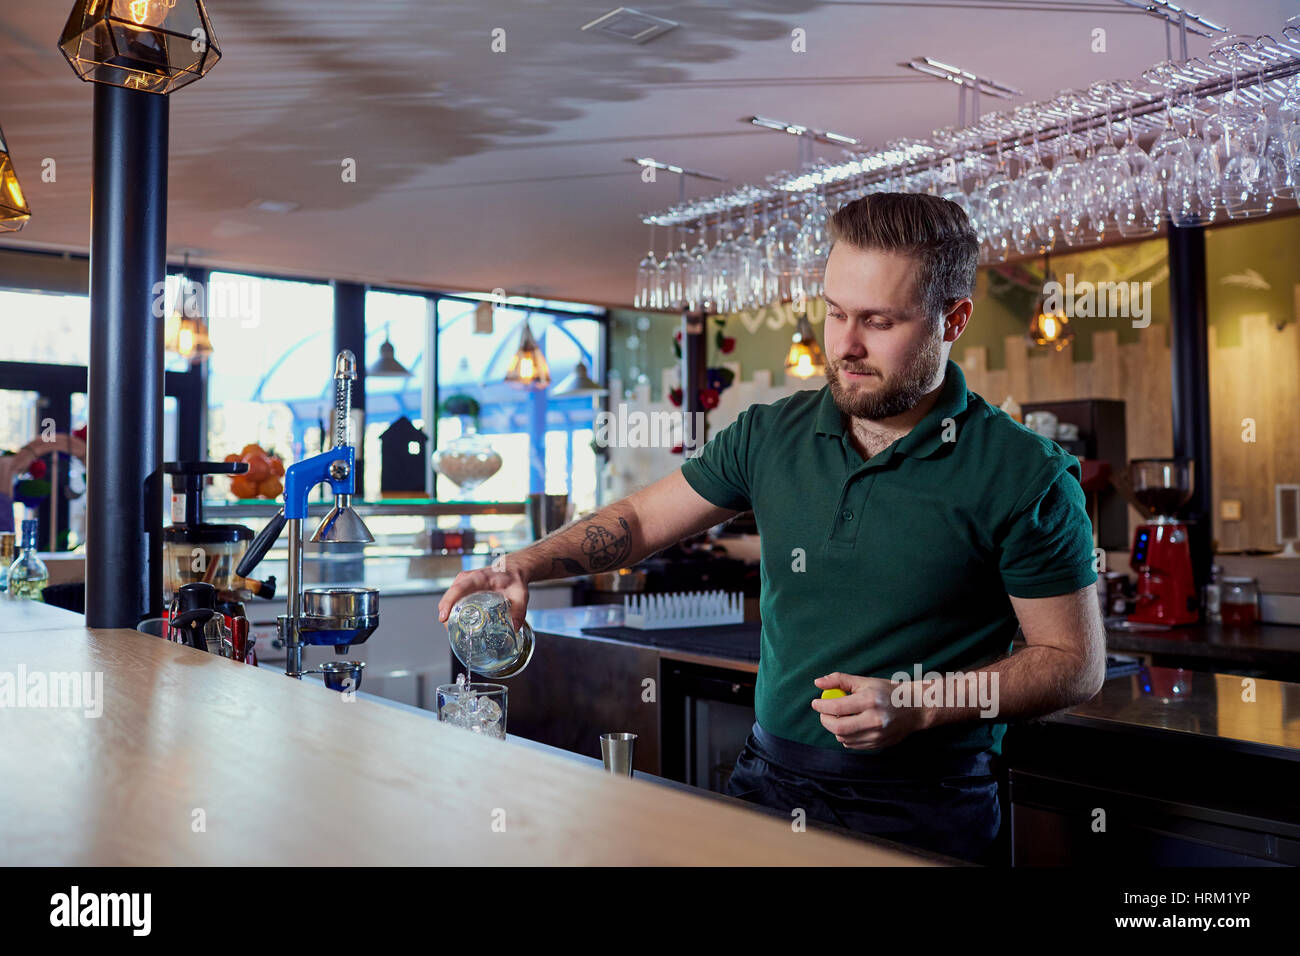 Der Barkeeper mit Bart hinter der bar einen Drink ins Glas gießt Stockfoto